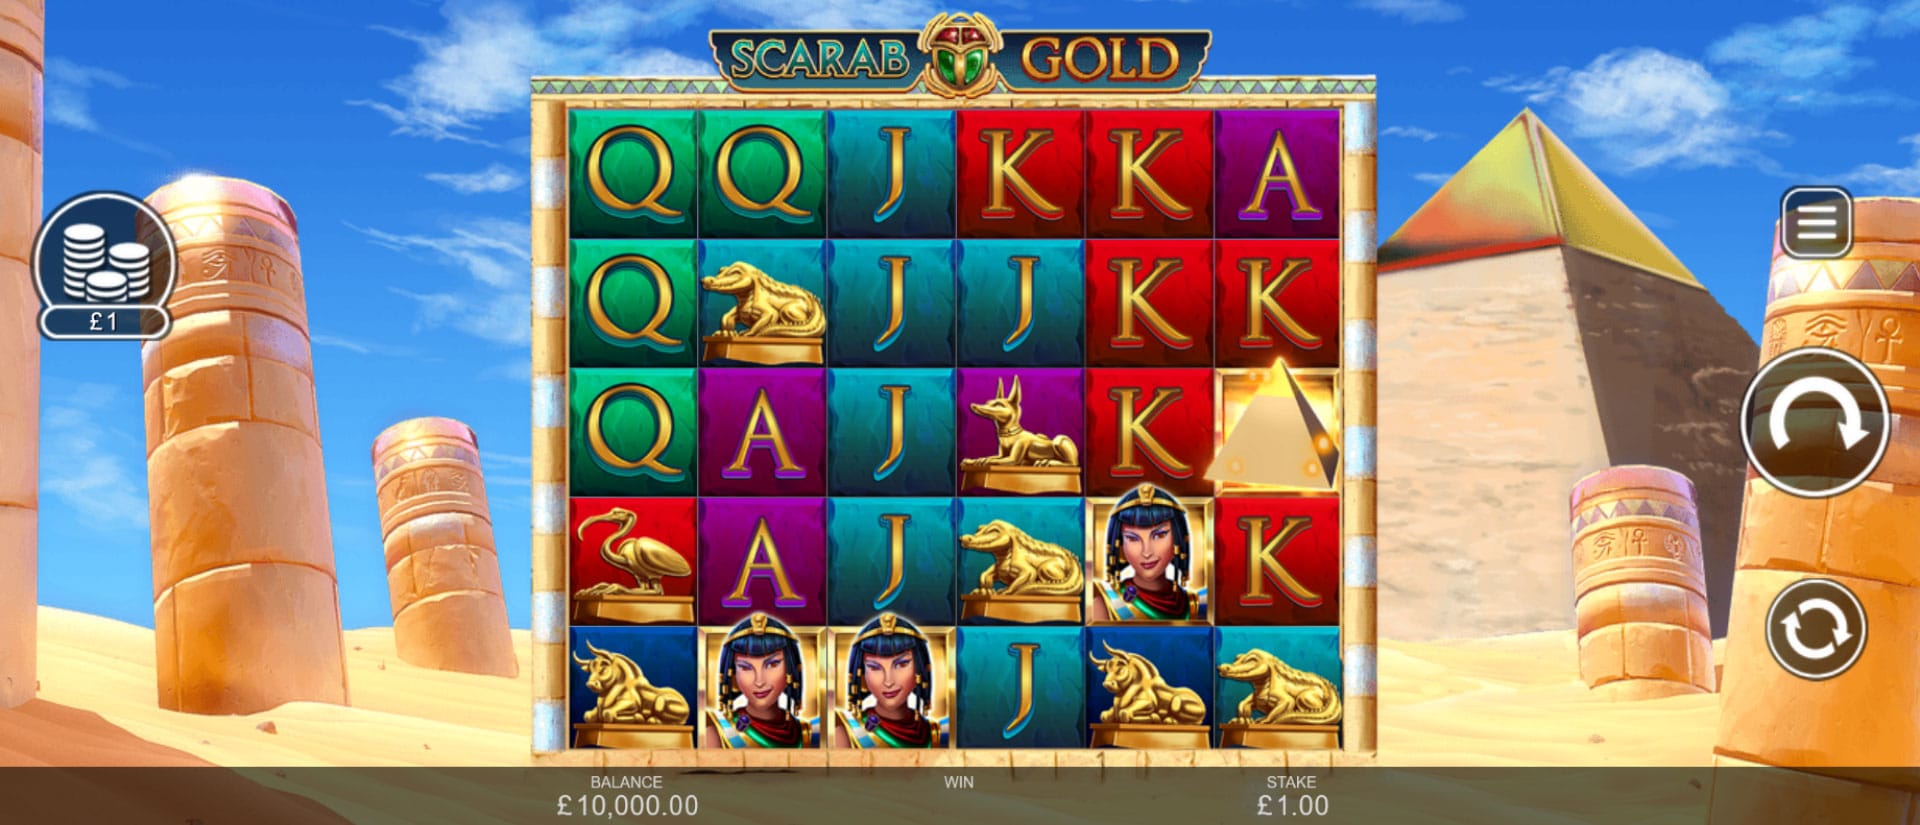 schermata del gioco slot machine scarab gold